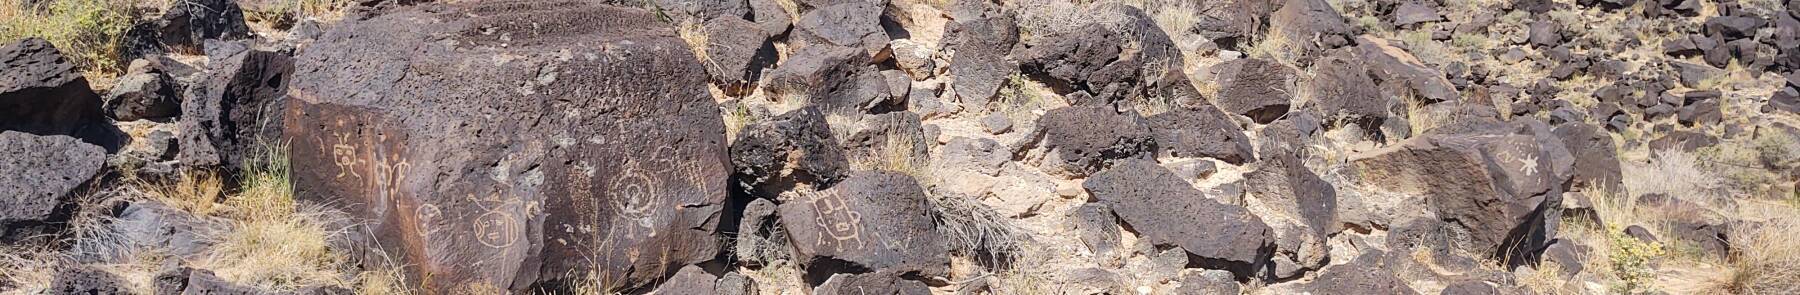 Petroglyphs near Albuquerque, New Mexico.